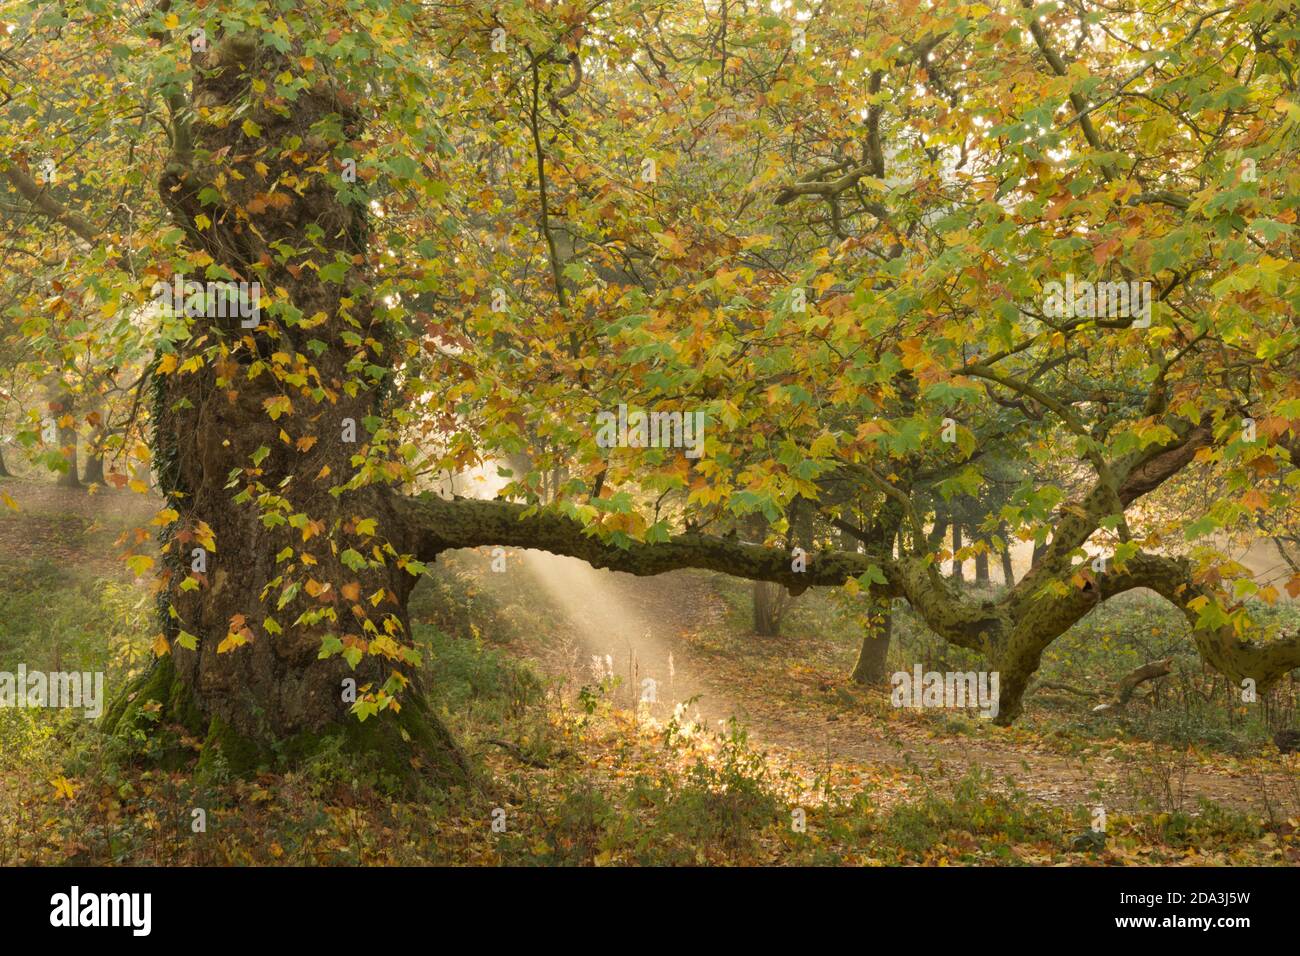 rayos de sol a través de la niebla con un árbol de London Plane en Cowdray Park, Midhurst, Sussex, UK London Plane, Platanus × acerifolia, noviembre Foto de stock